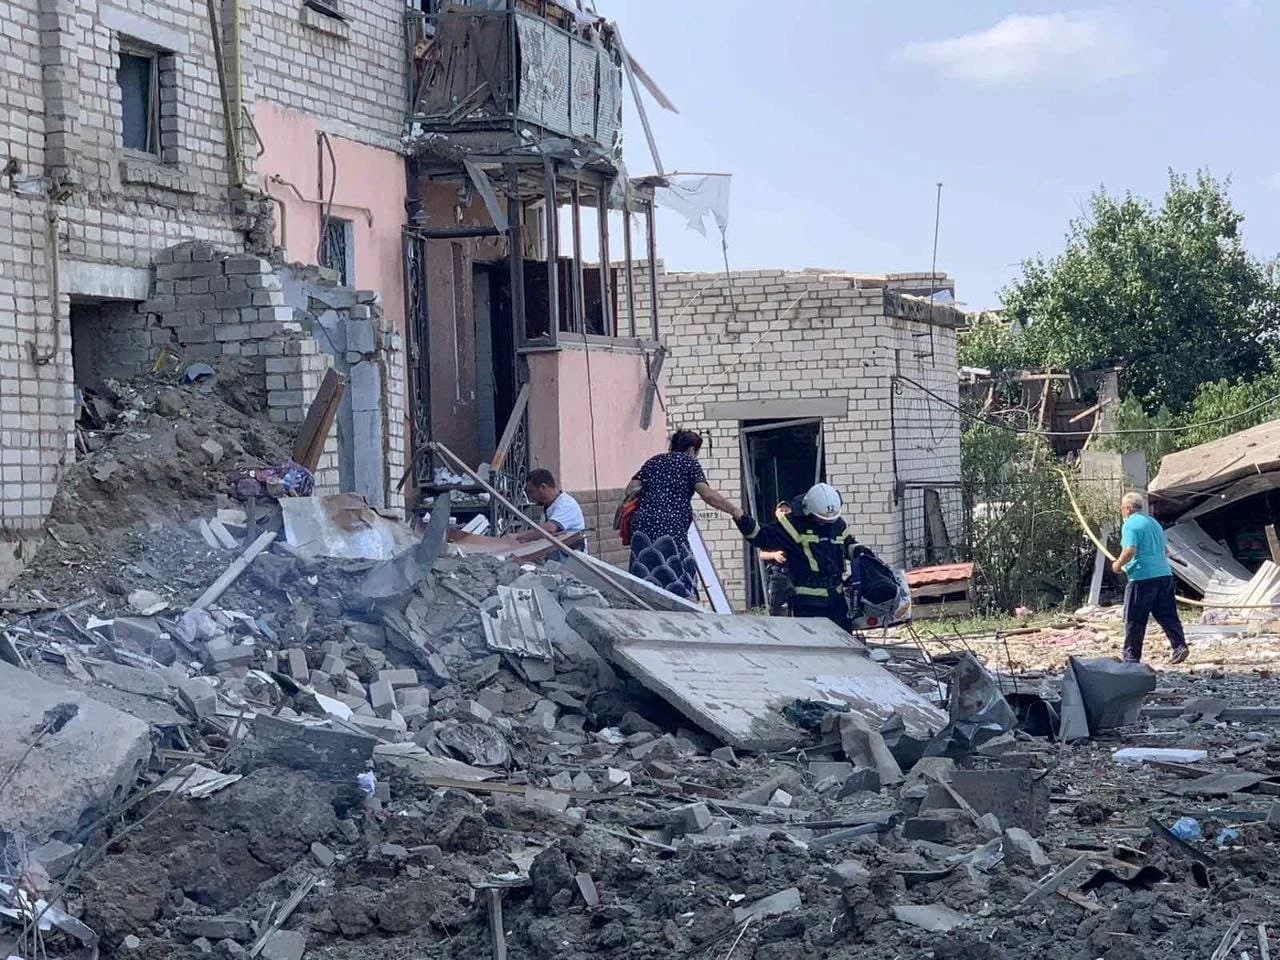 העיר ווזנסנסק, בה נפגעו 12 אזרחים, לאחר התקפה רוסית